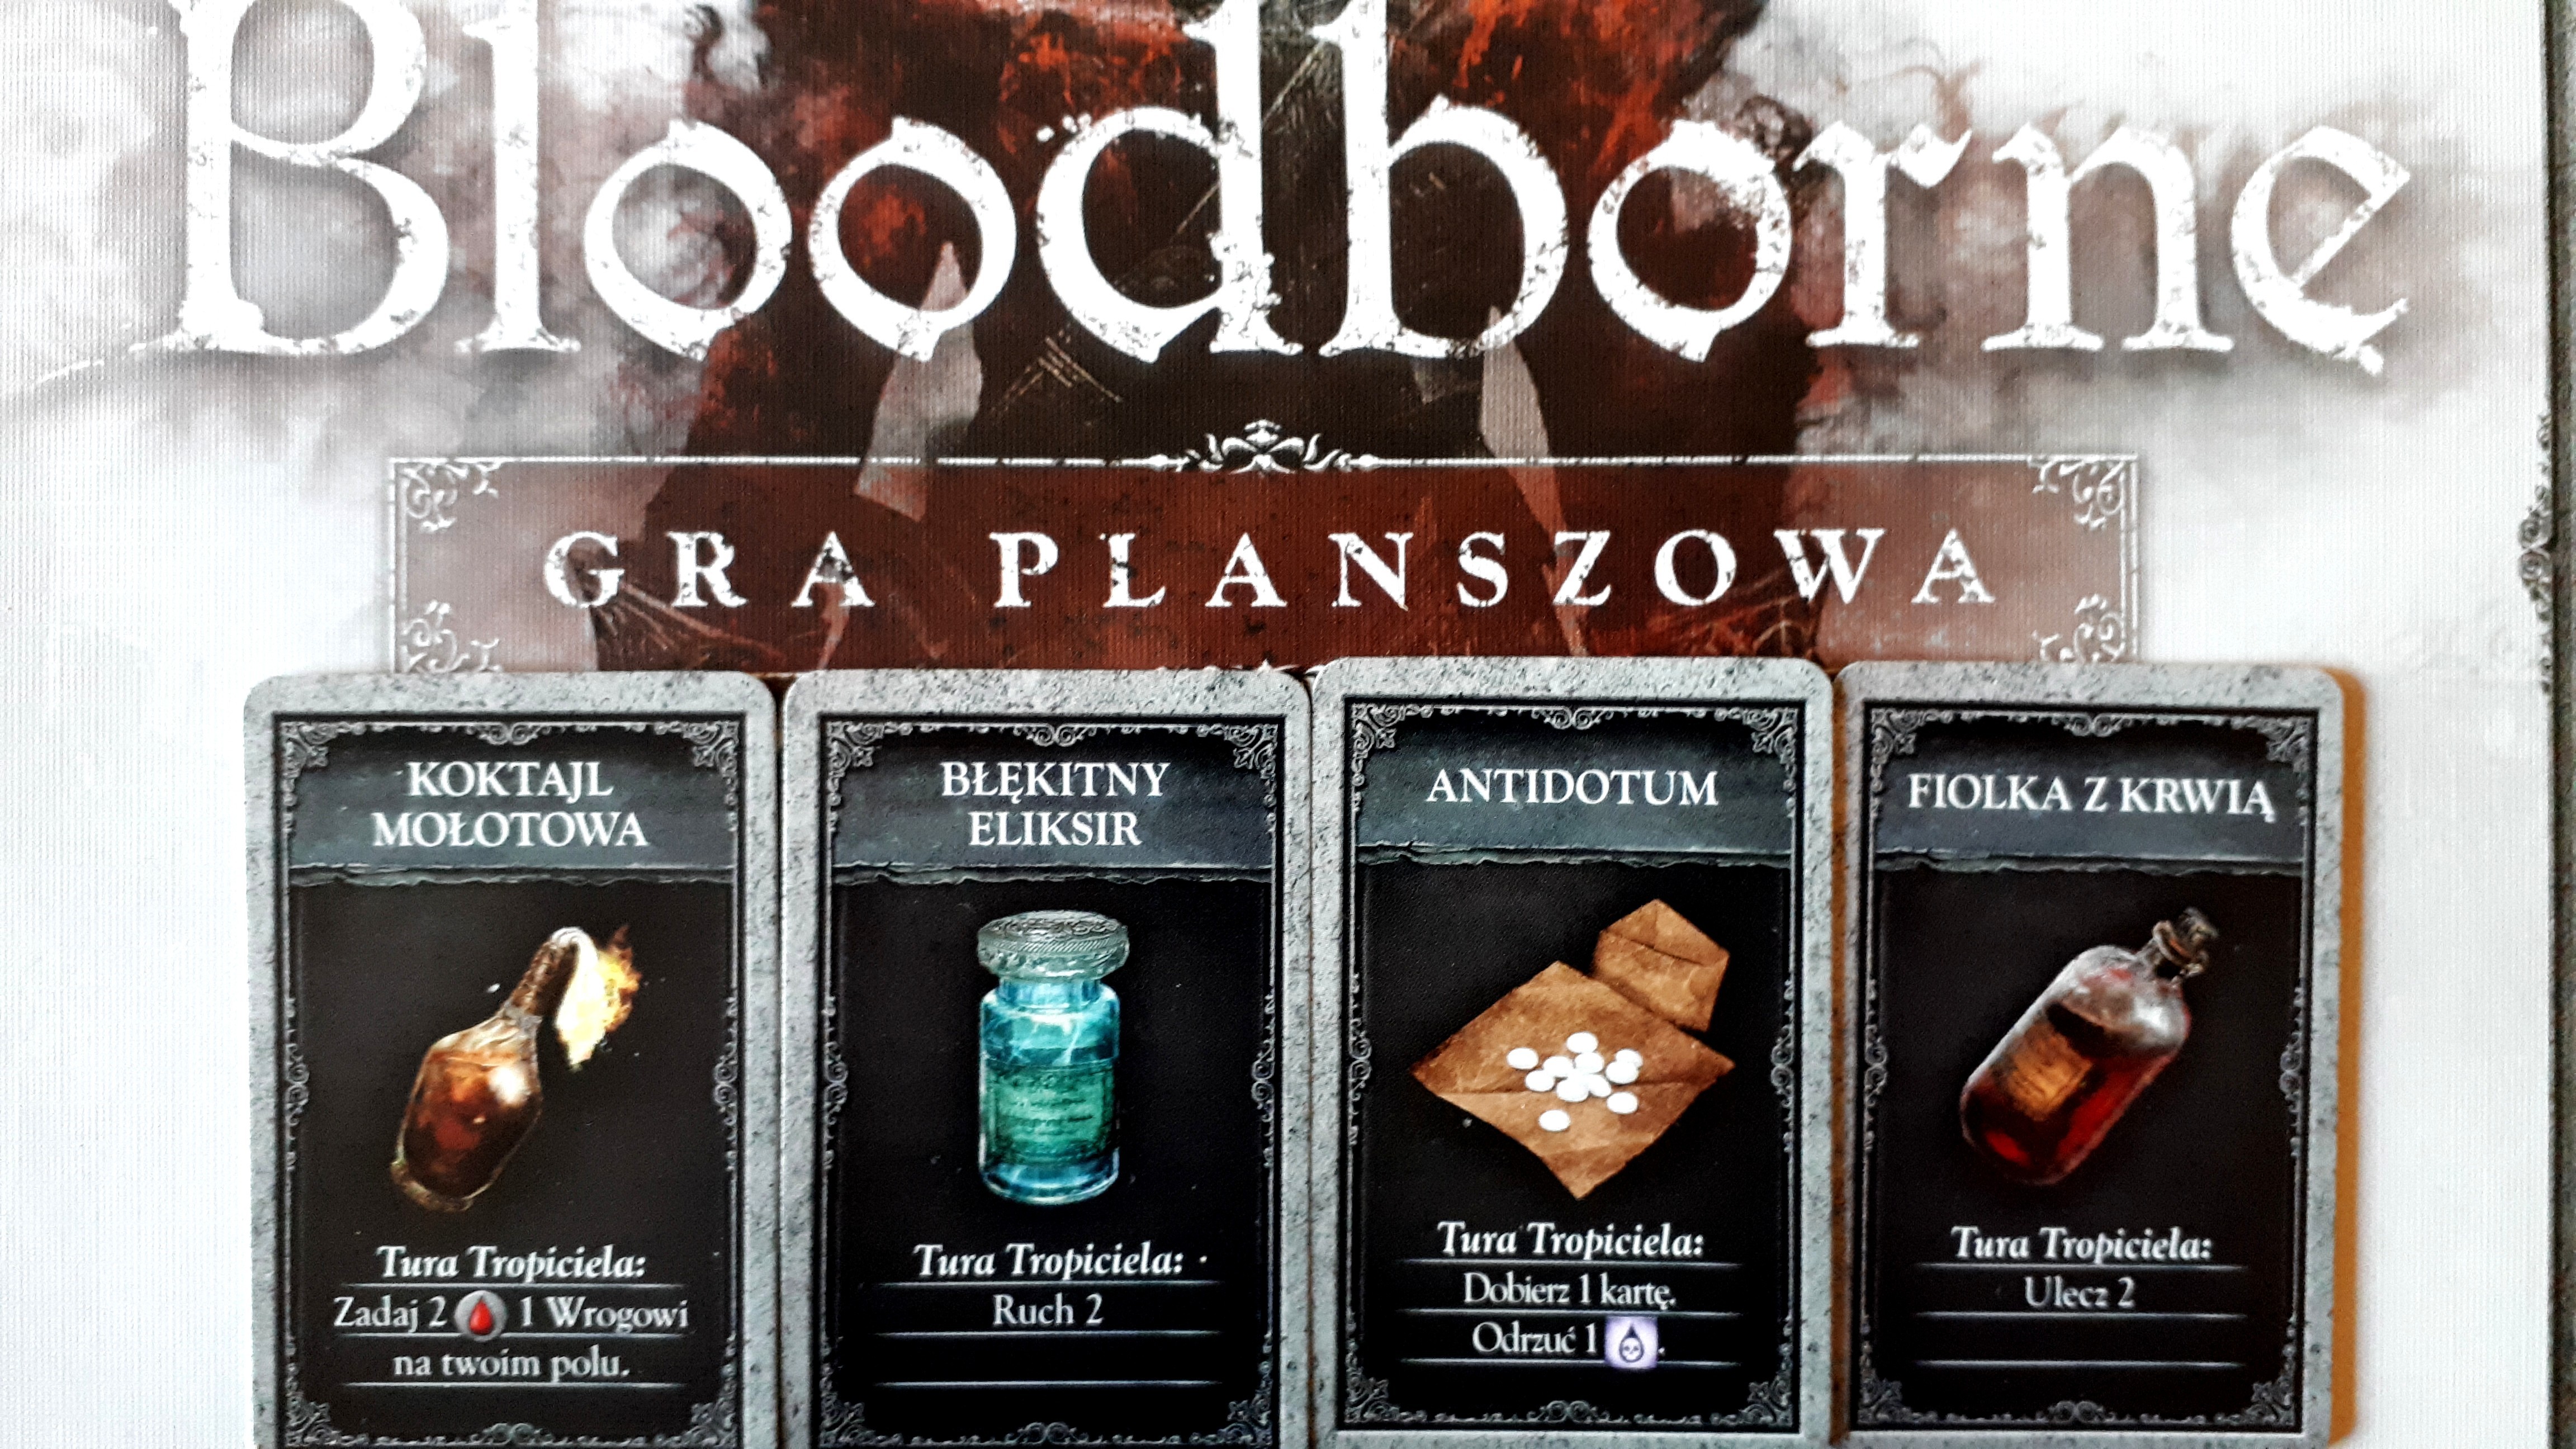 Bloodborne: Gra planszowa (1)